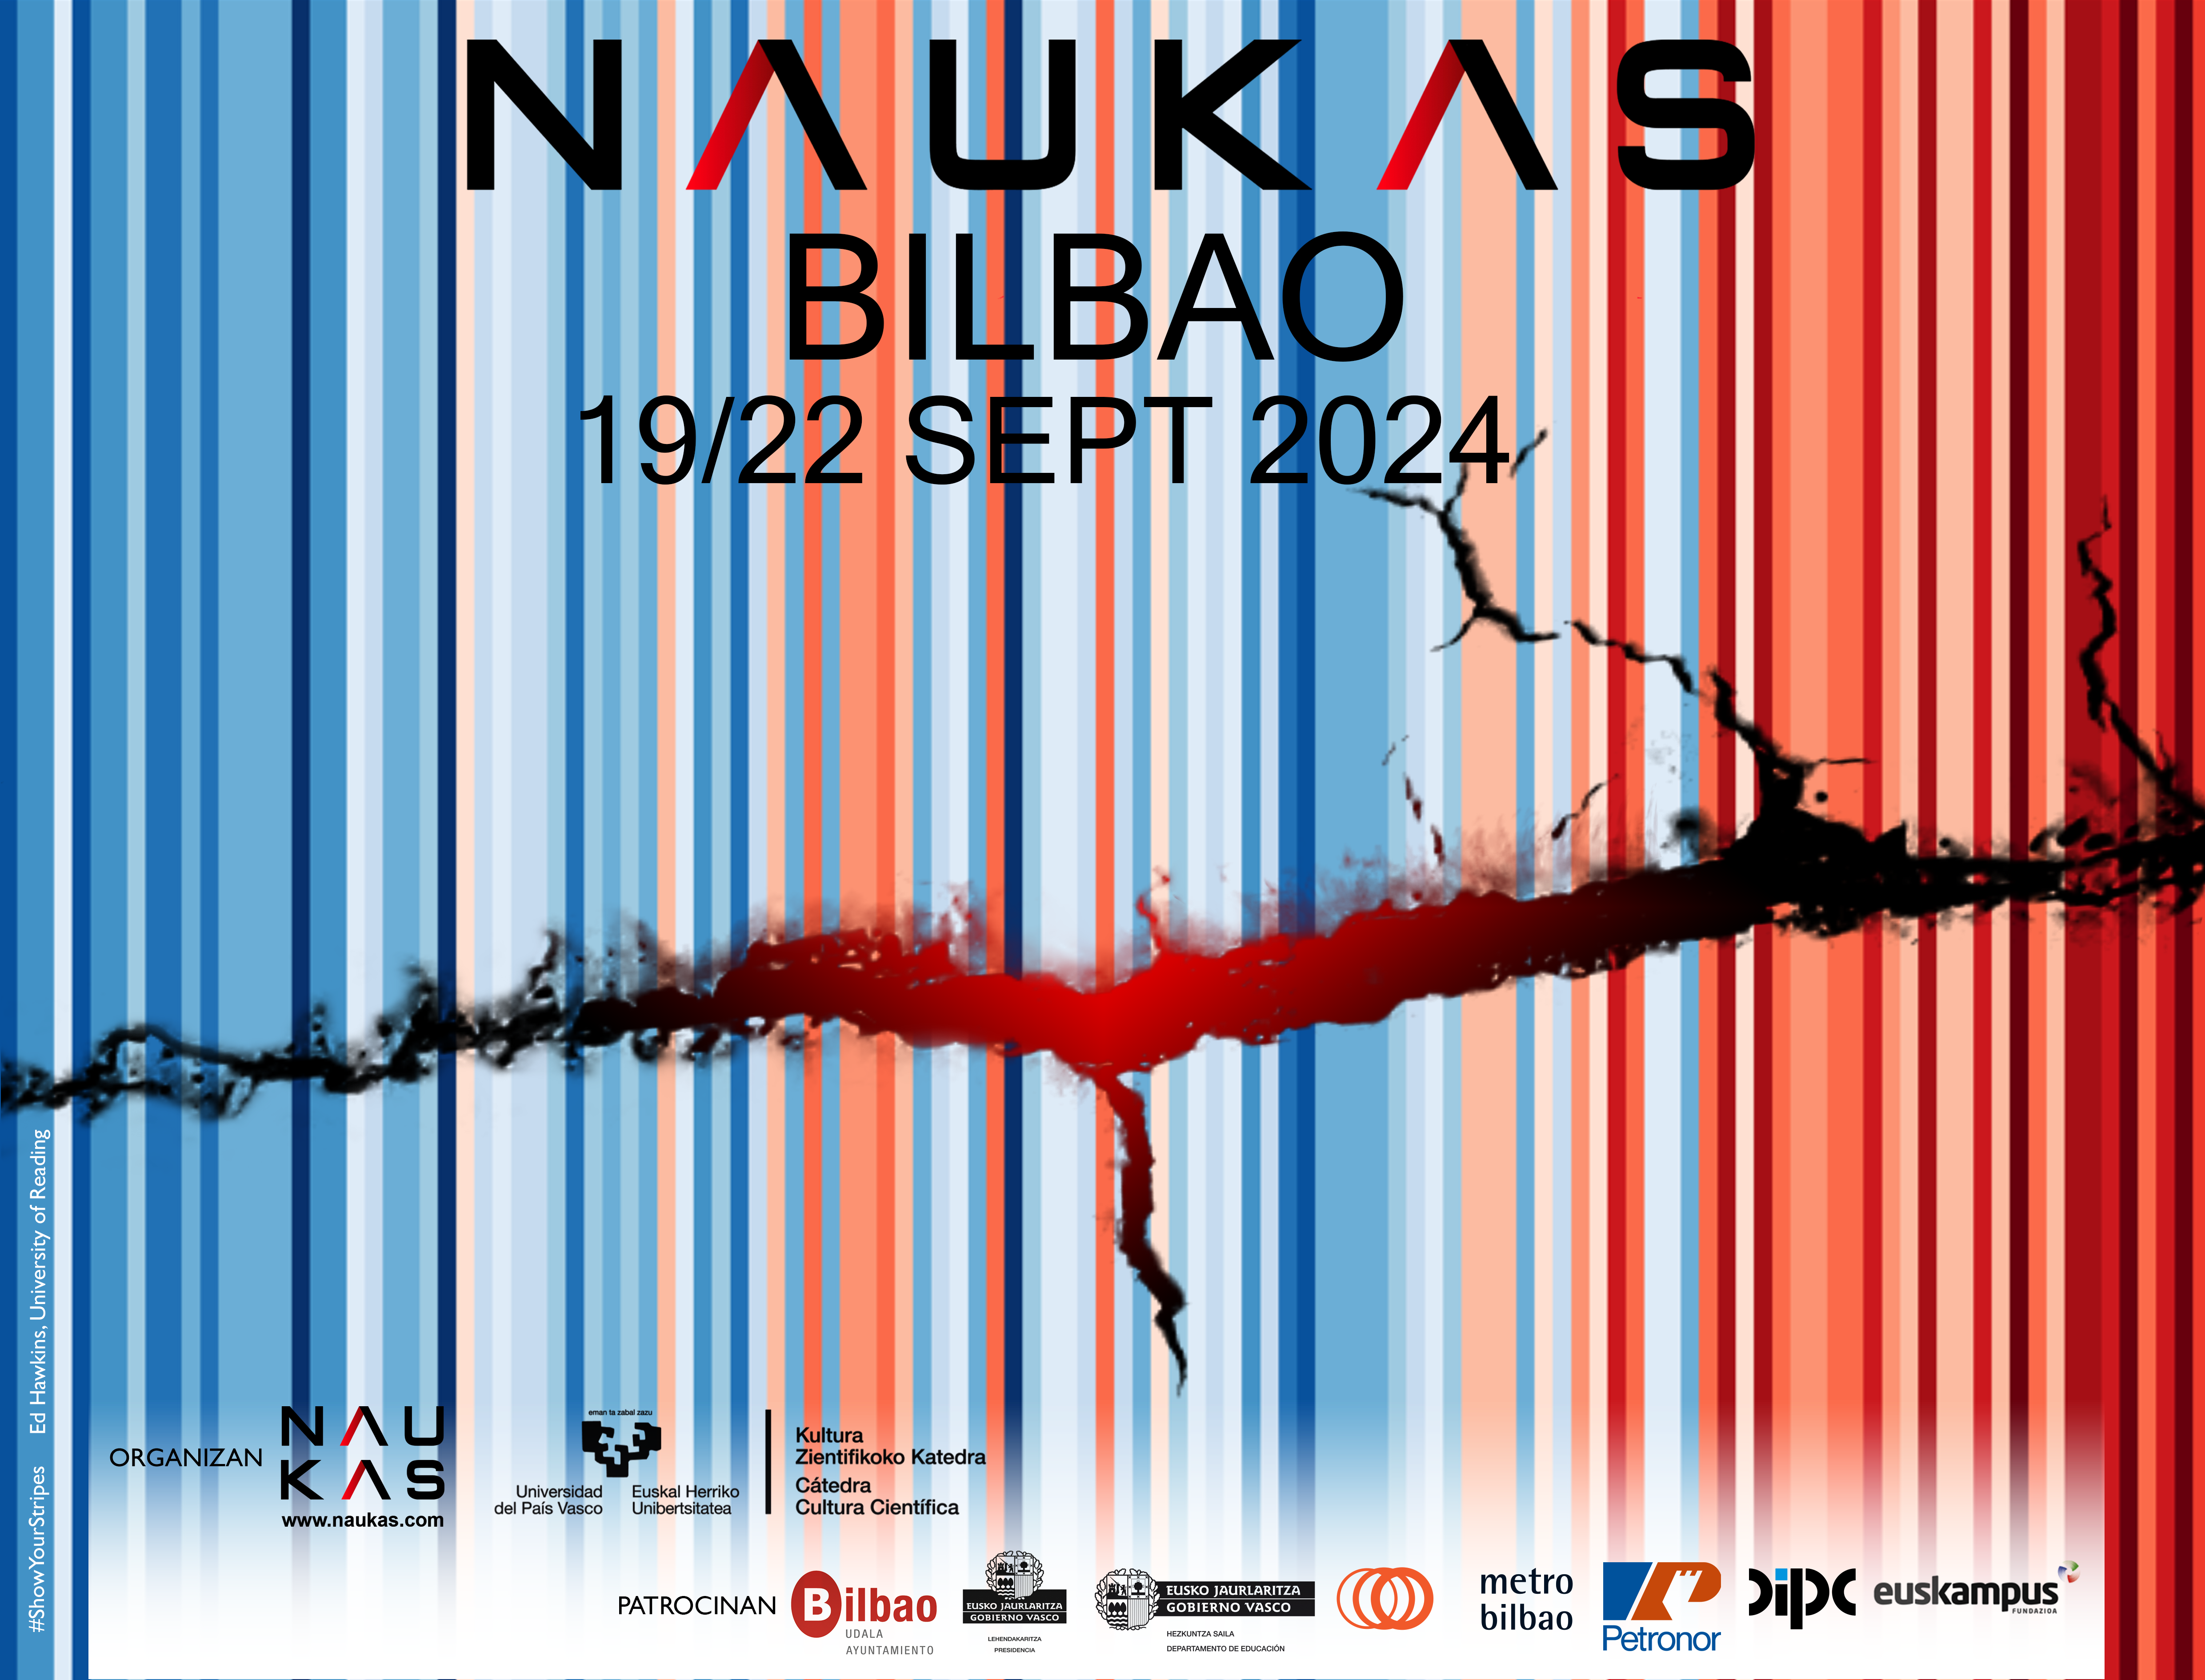 Ya tenemos cartel y fechas para Naukas Bilbao 2024